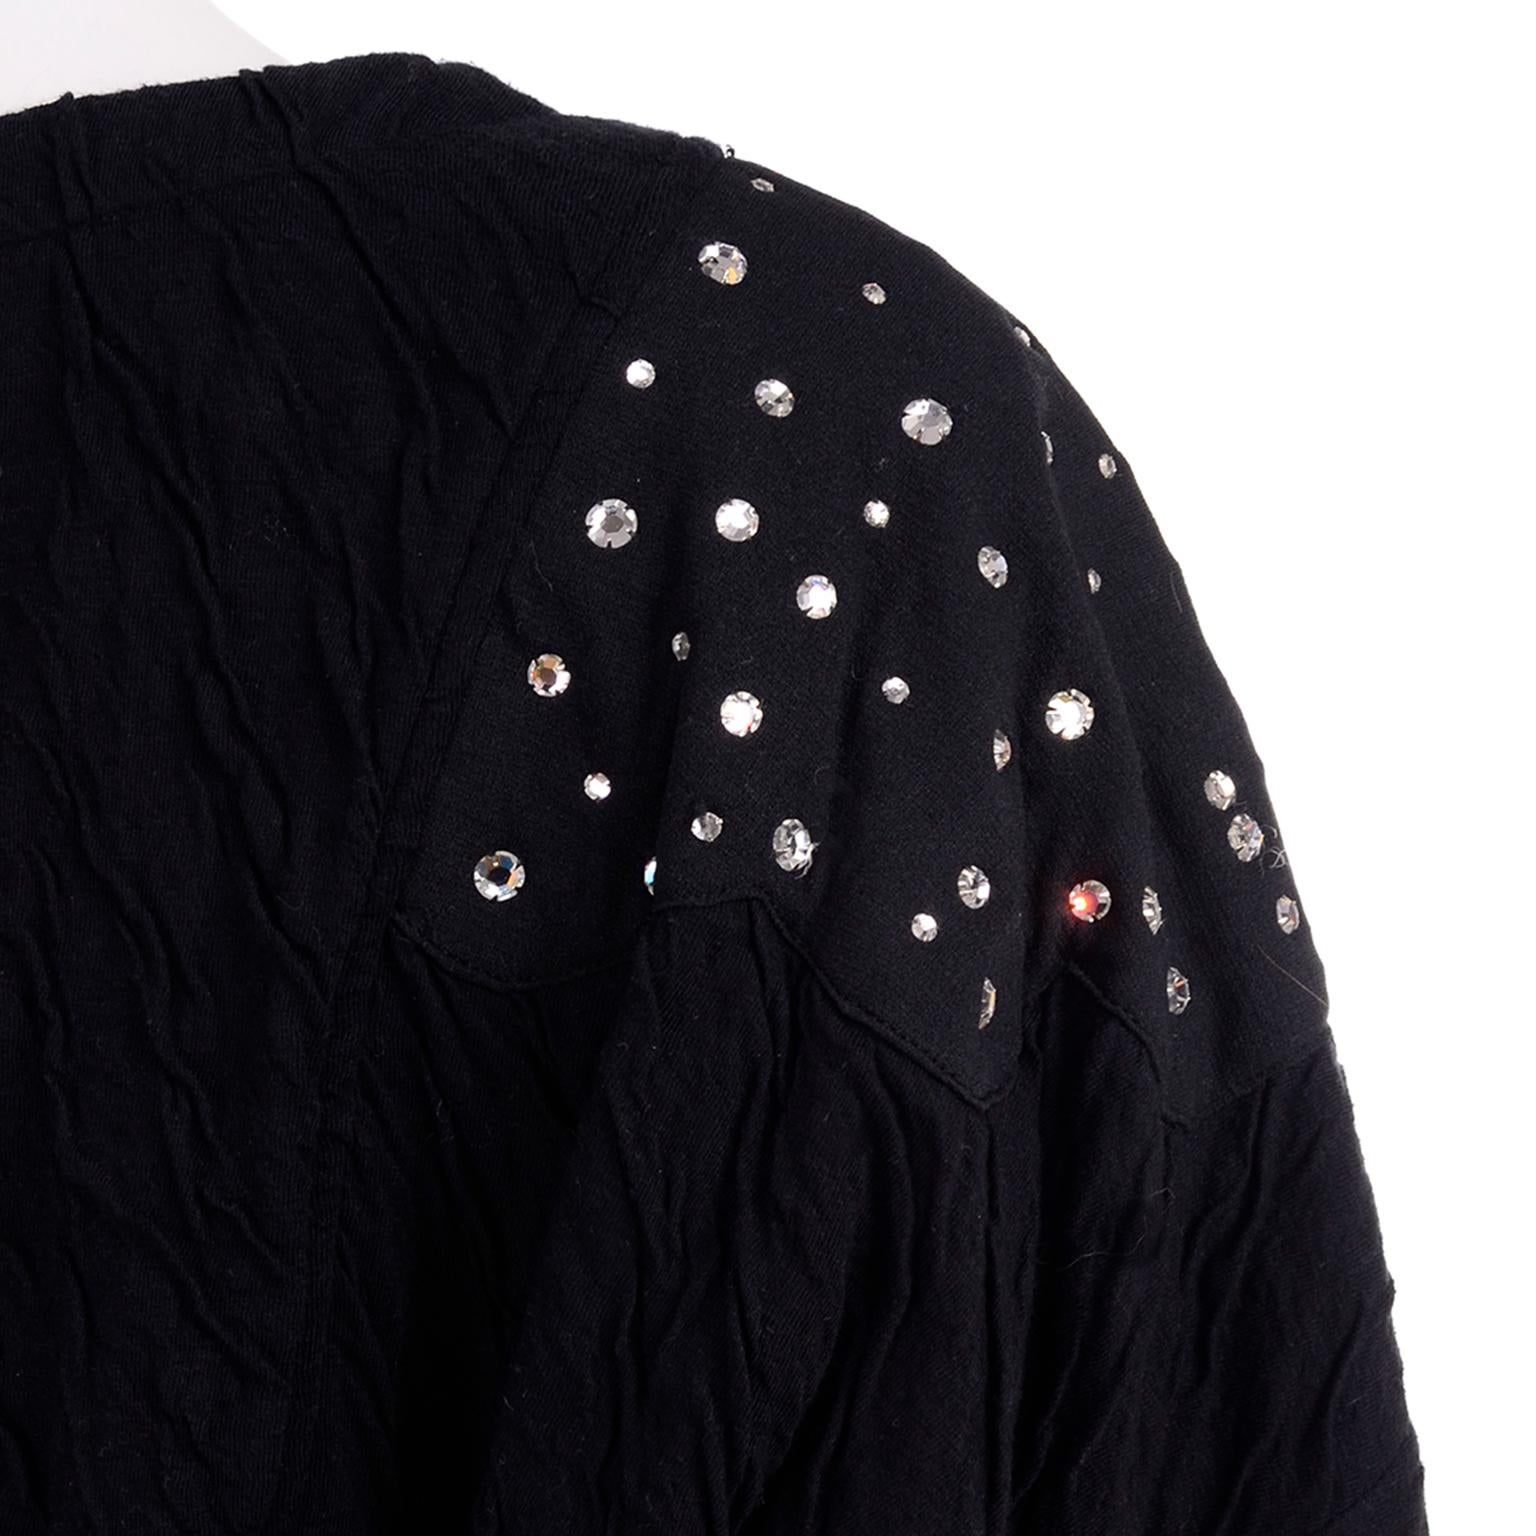 Vintage Black Crinkle 1980s Jumpsuit With Rhinestones & Dolman Sleeves 4